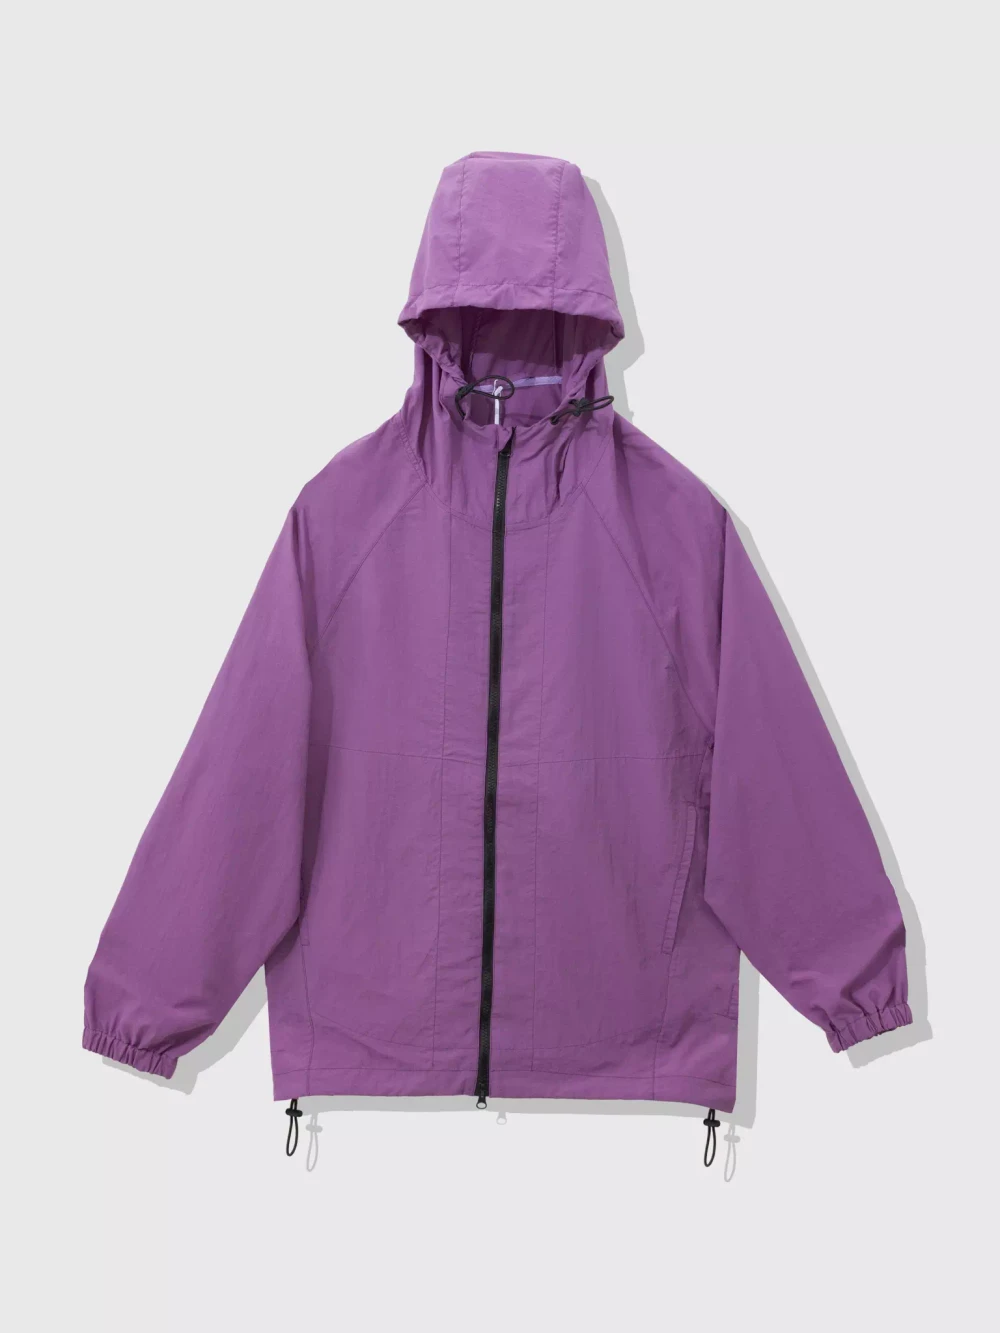 Мужская Куртка Pock Purple